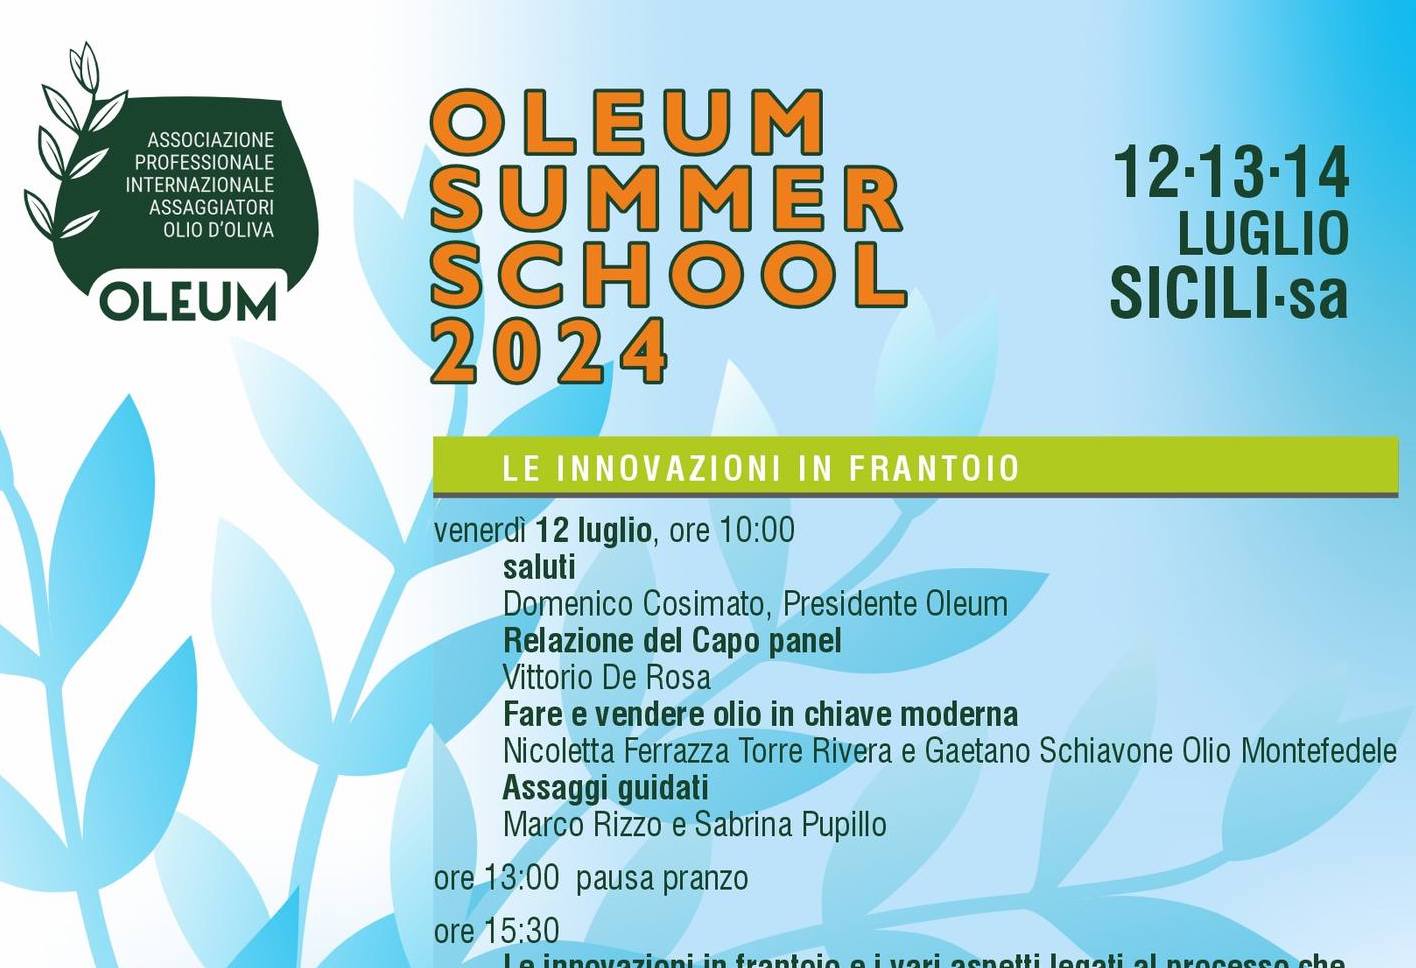 Oleum Summer School 2024: a Sicilì innovazione e tradizione nell’Olio d’Oliva